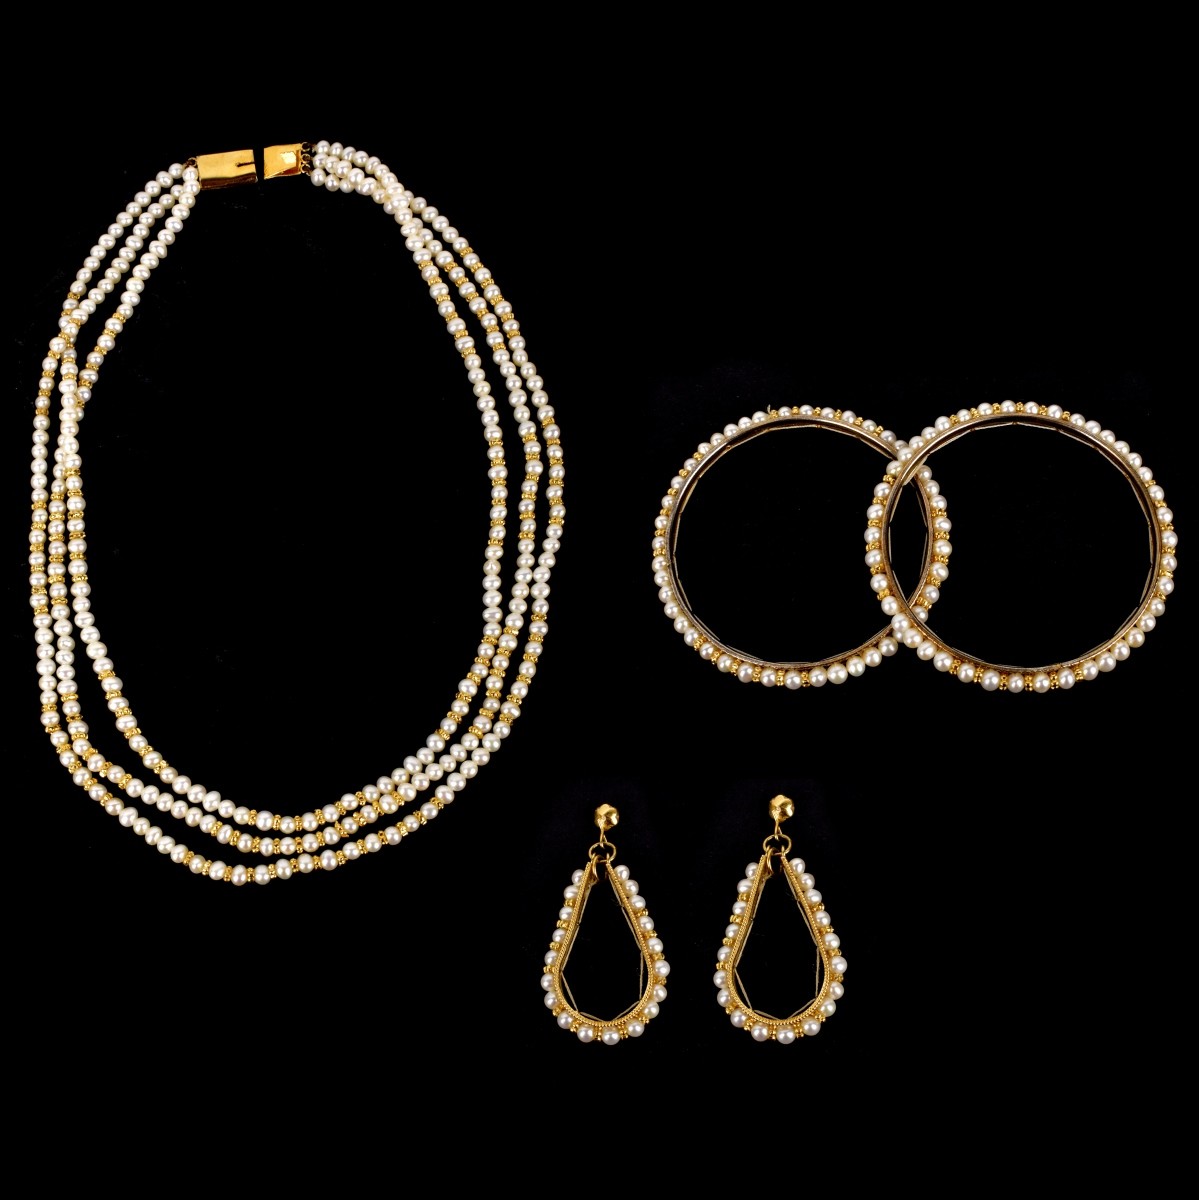 Pearl Jewelry Lot